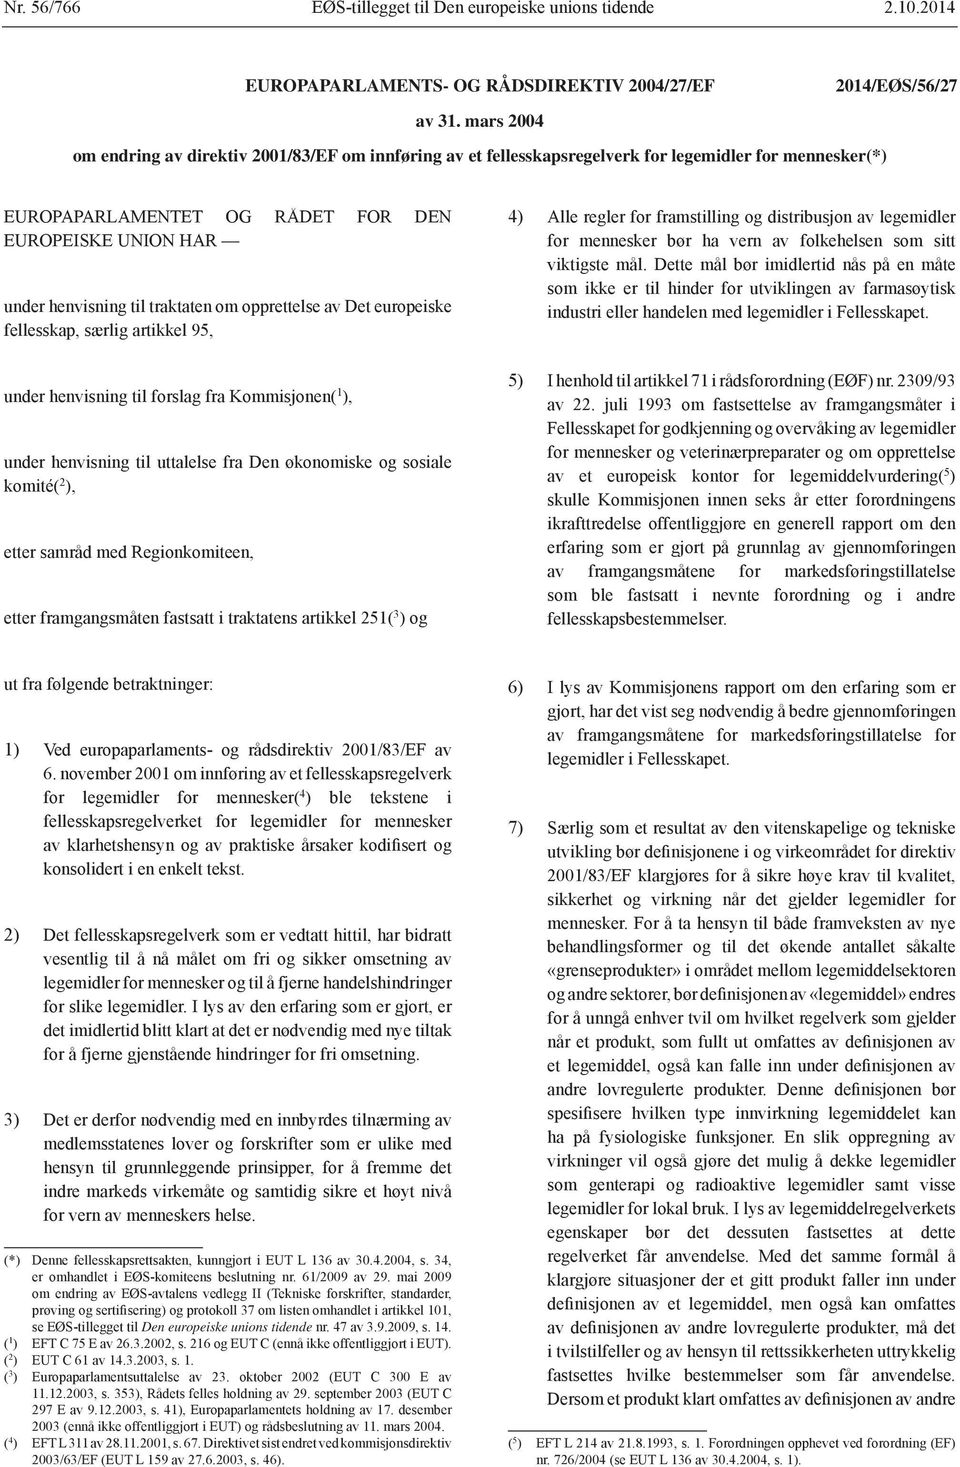 europeiske under henvisning til forslag fra Kommisjonen( 1 under henvisning til uttalelse fra Den økonomiske og sosiale komité( 2 etter framgangsmåten fastsatt i traktatens artikkel 251( 3 ) og 4)